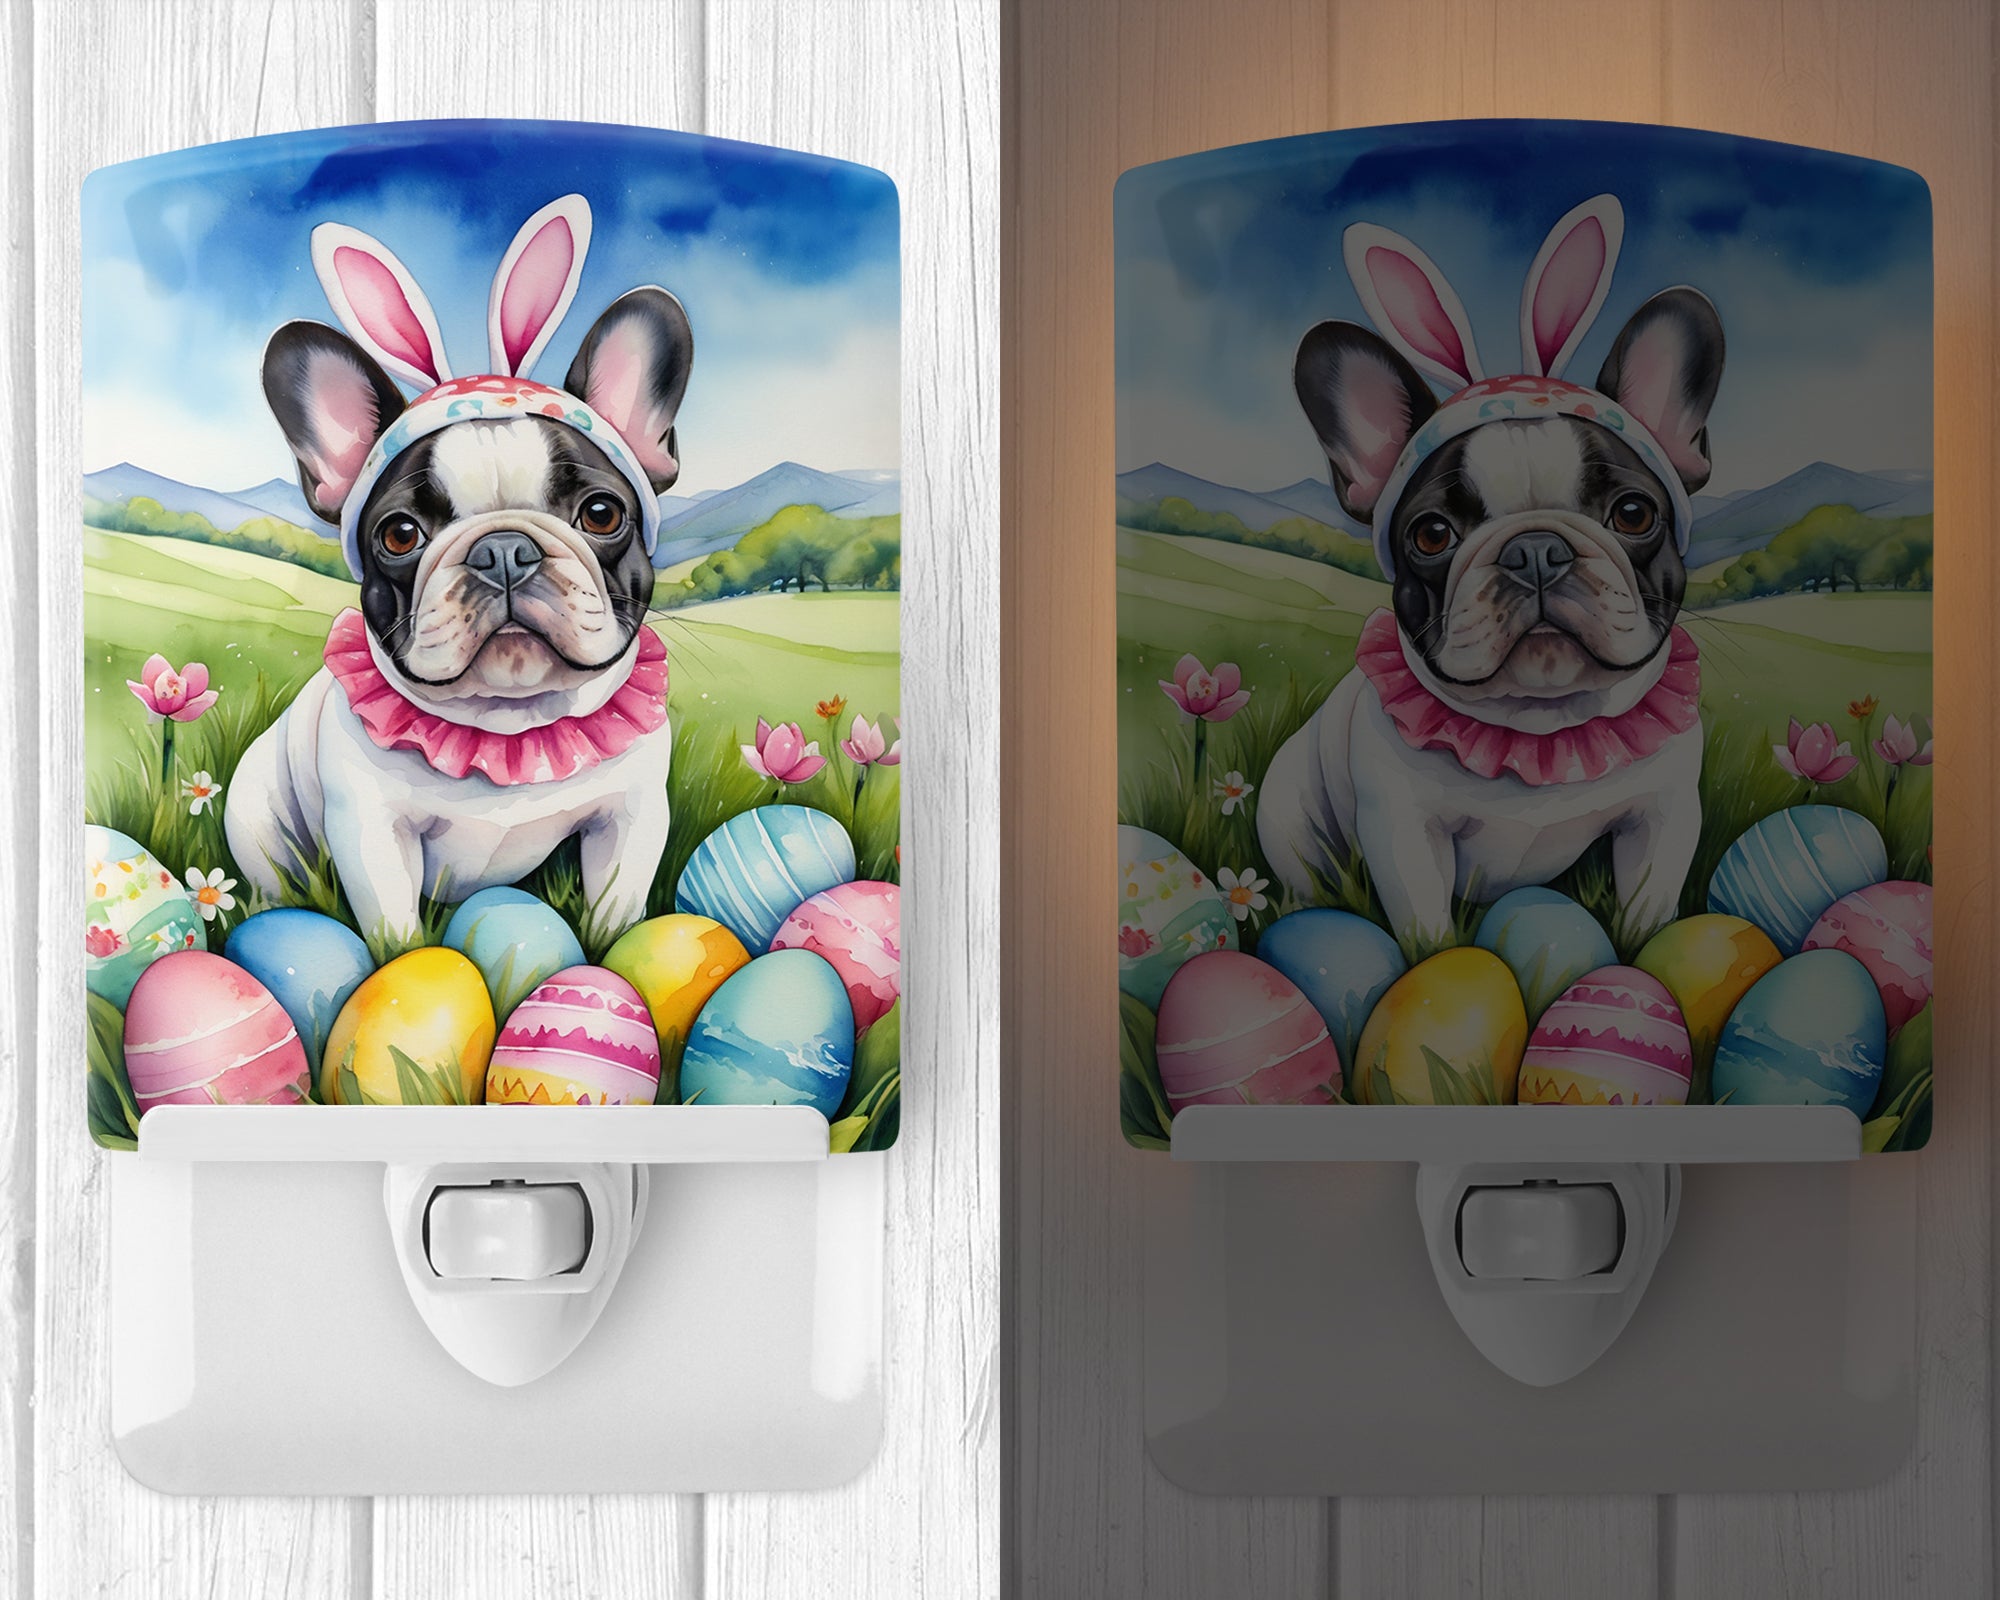 French Bulldog Easter Egg Hunt Ceramic Night Light